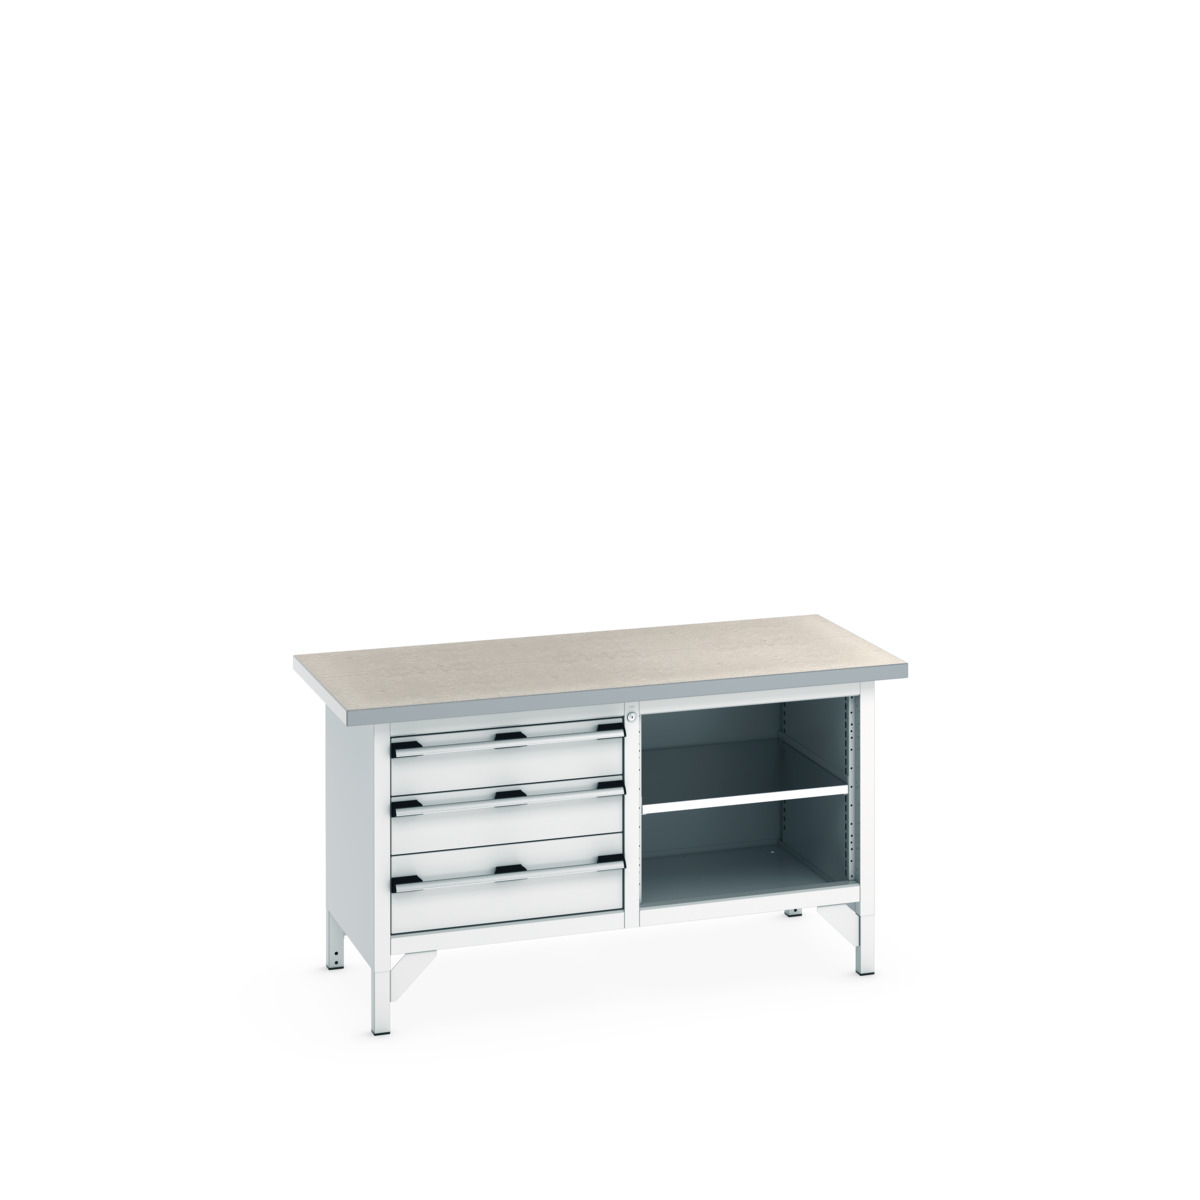 41002167.16V - cubio storage bench (lino)